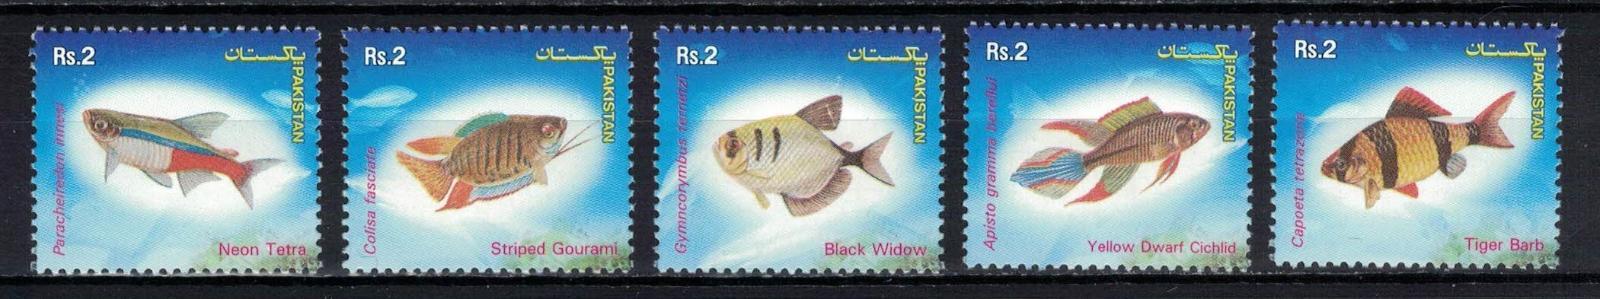 Pakistán 2004 "Popular Aquarium Varieties of Tropical fish"